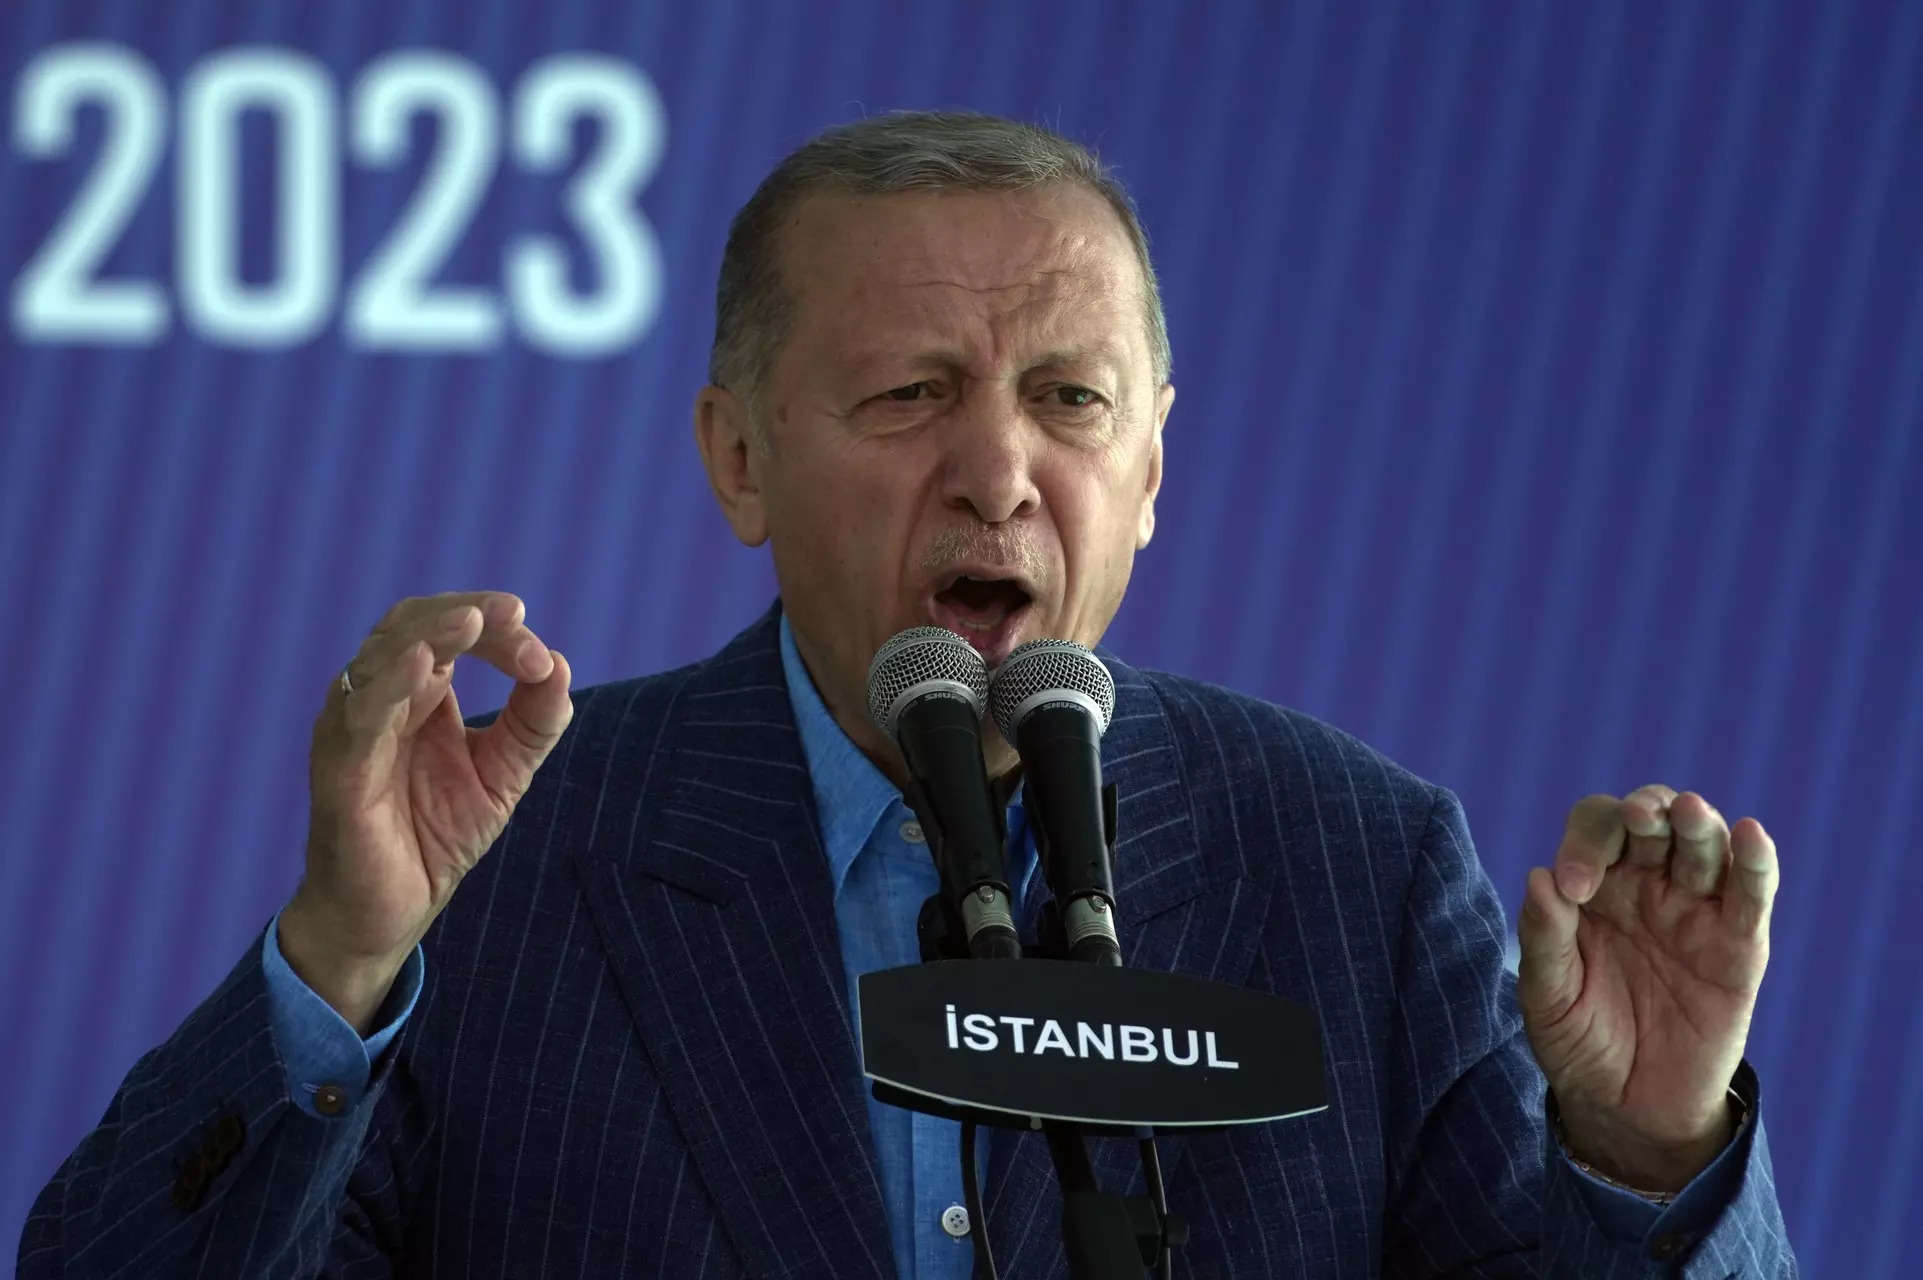 رجب طیب اردوغان رئیس جمهور ترکیه به یک محور پس از انتخابات نیاز دارد.